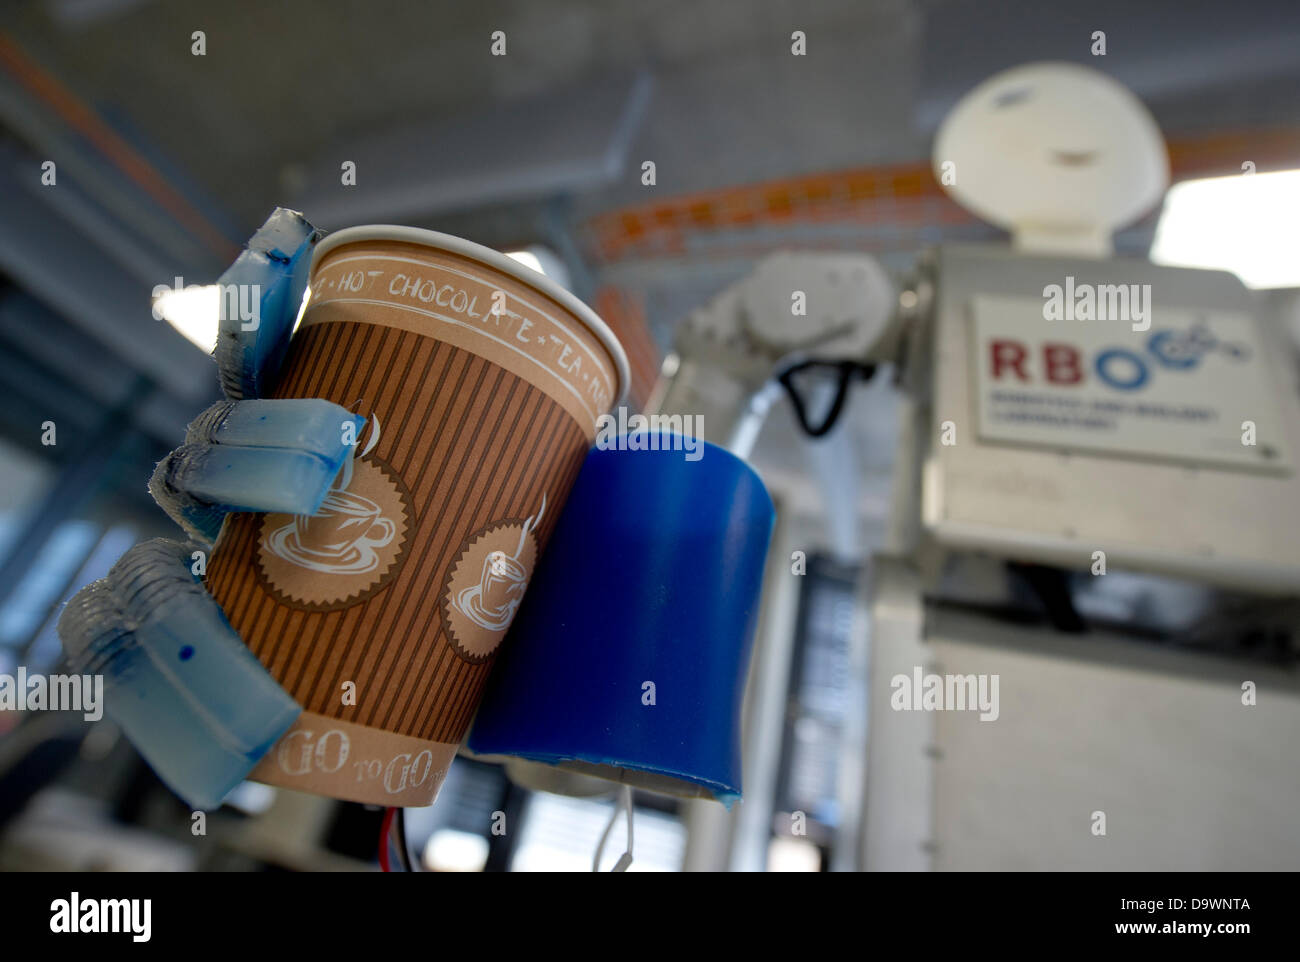 Robot 'Meka' fabbricato da 'Meka Robotics' detiene una tazza di caffè presso la Technische Universitaet (TU) di Berlino, Germania, 27 giugno 2013. Il 'Softhands' o 'RBO mano' sono state sviluppate dalla robotica e biologia (FR) Laboratorio di TU di Berlino. Foto: Nicolas Armer Foto Stock